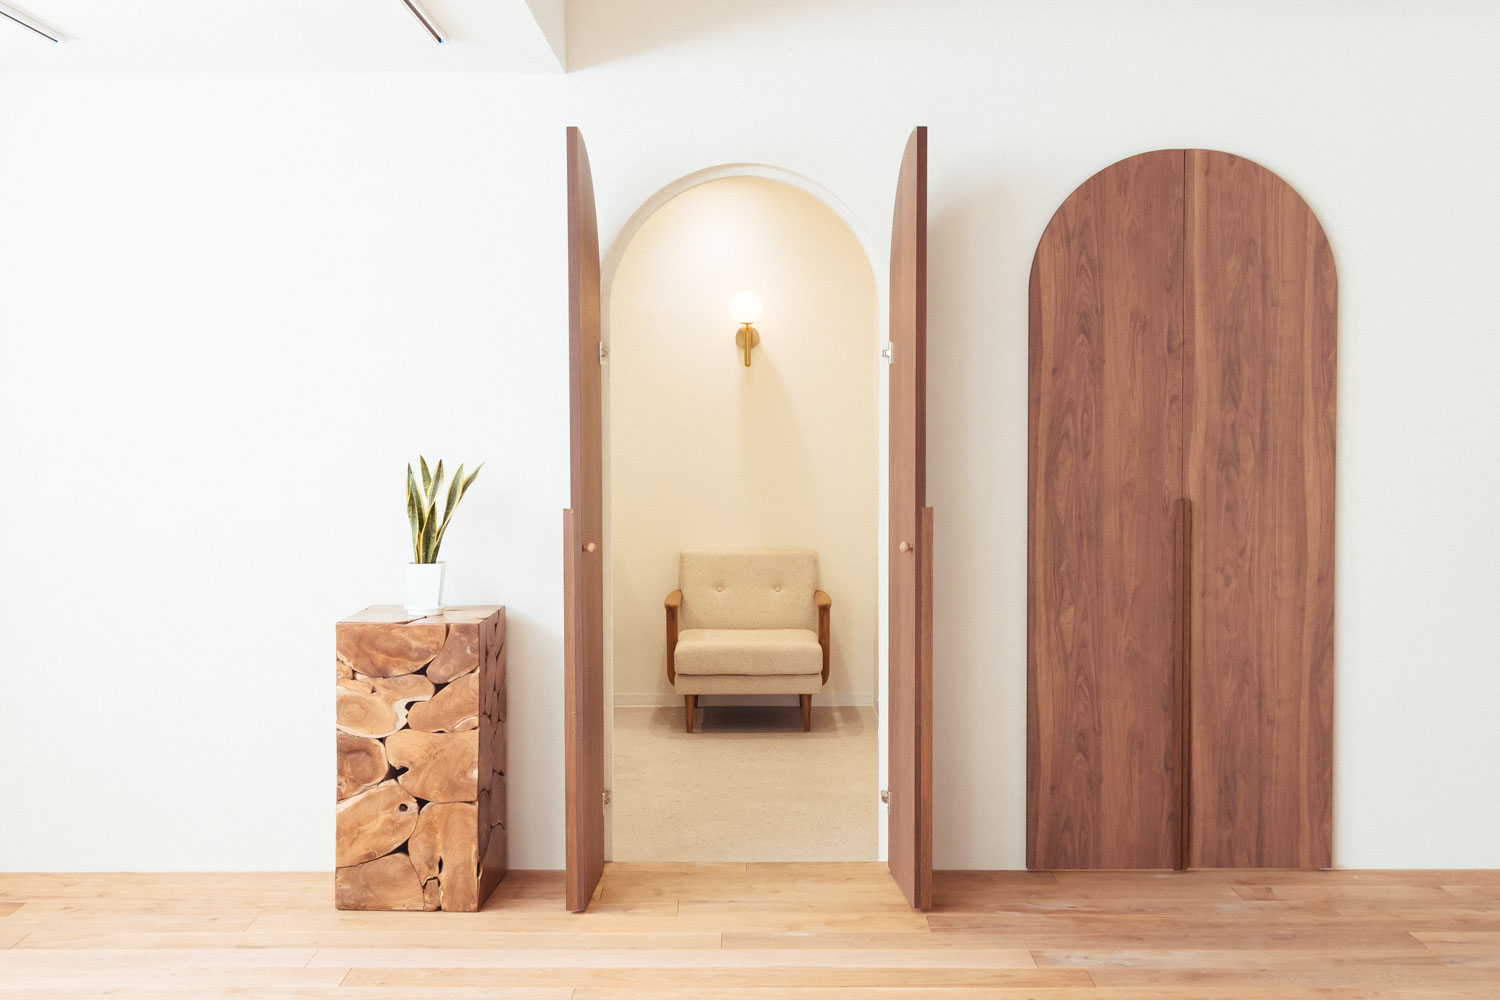 円形の木製ドアが開いた奥に、一人掛けソファが照明に照らされている写真